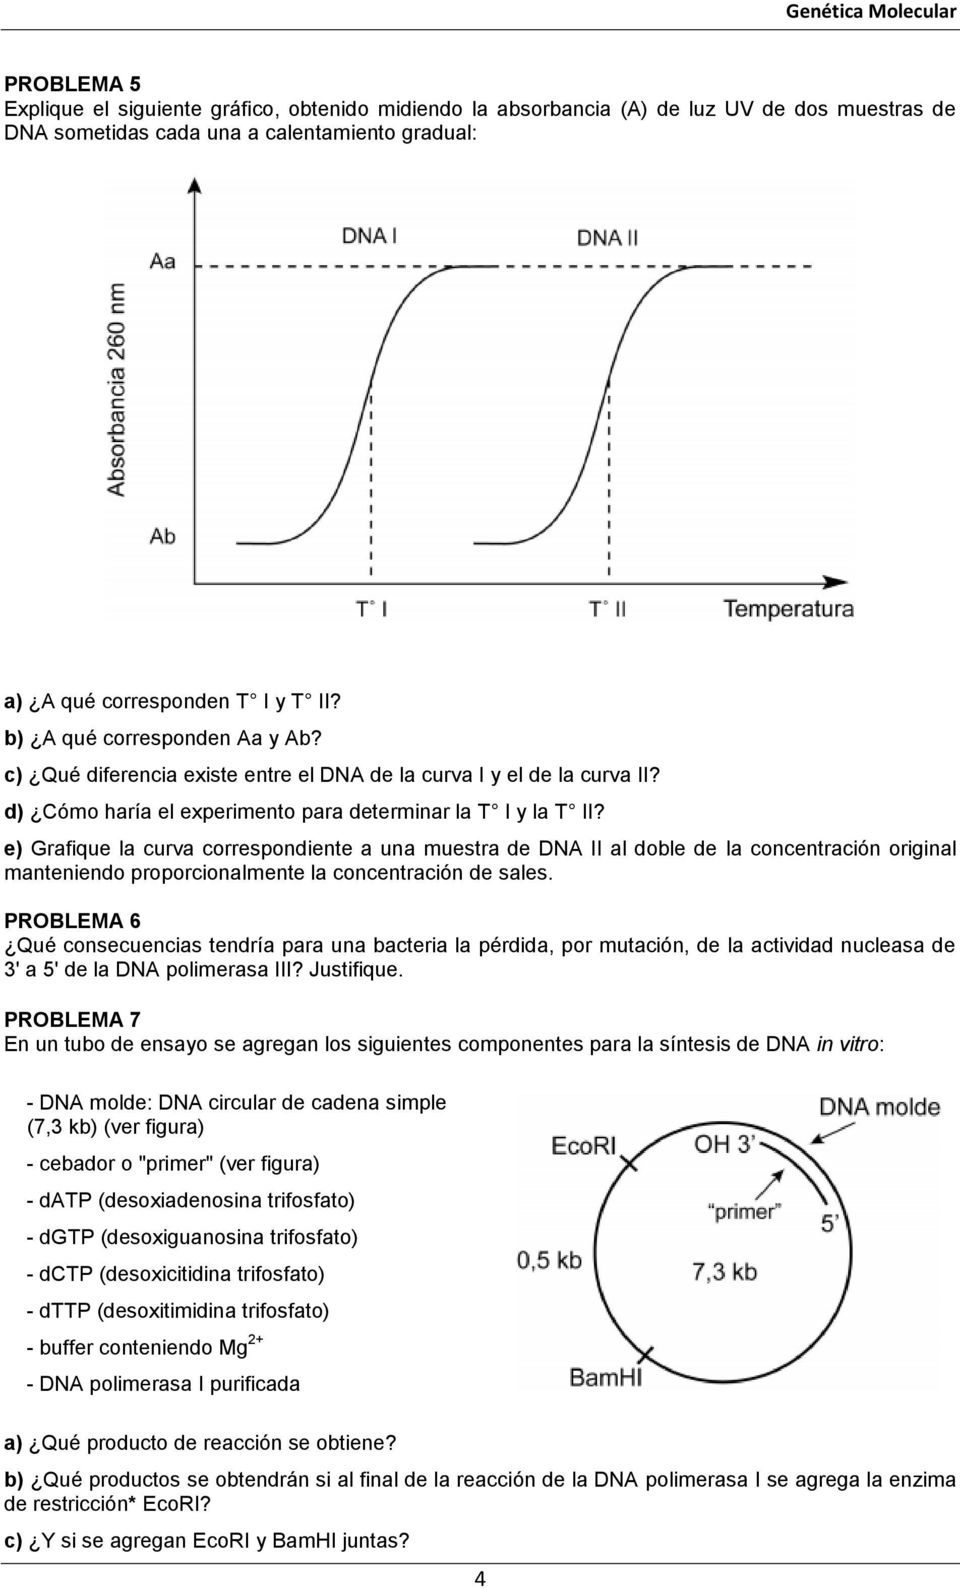 e) Grafique la curva correspondiente a una muestra de DNA II al doble de la concentración original manteniendo proporcionalmente la concentración de sales.